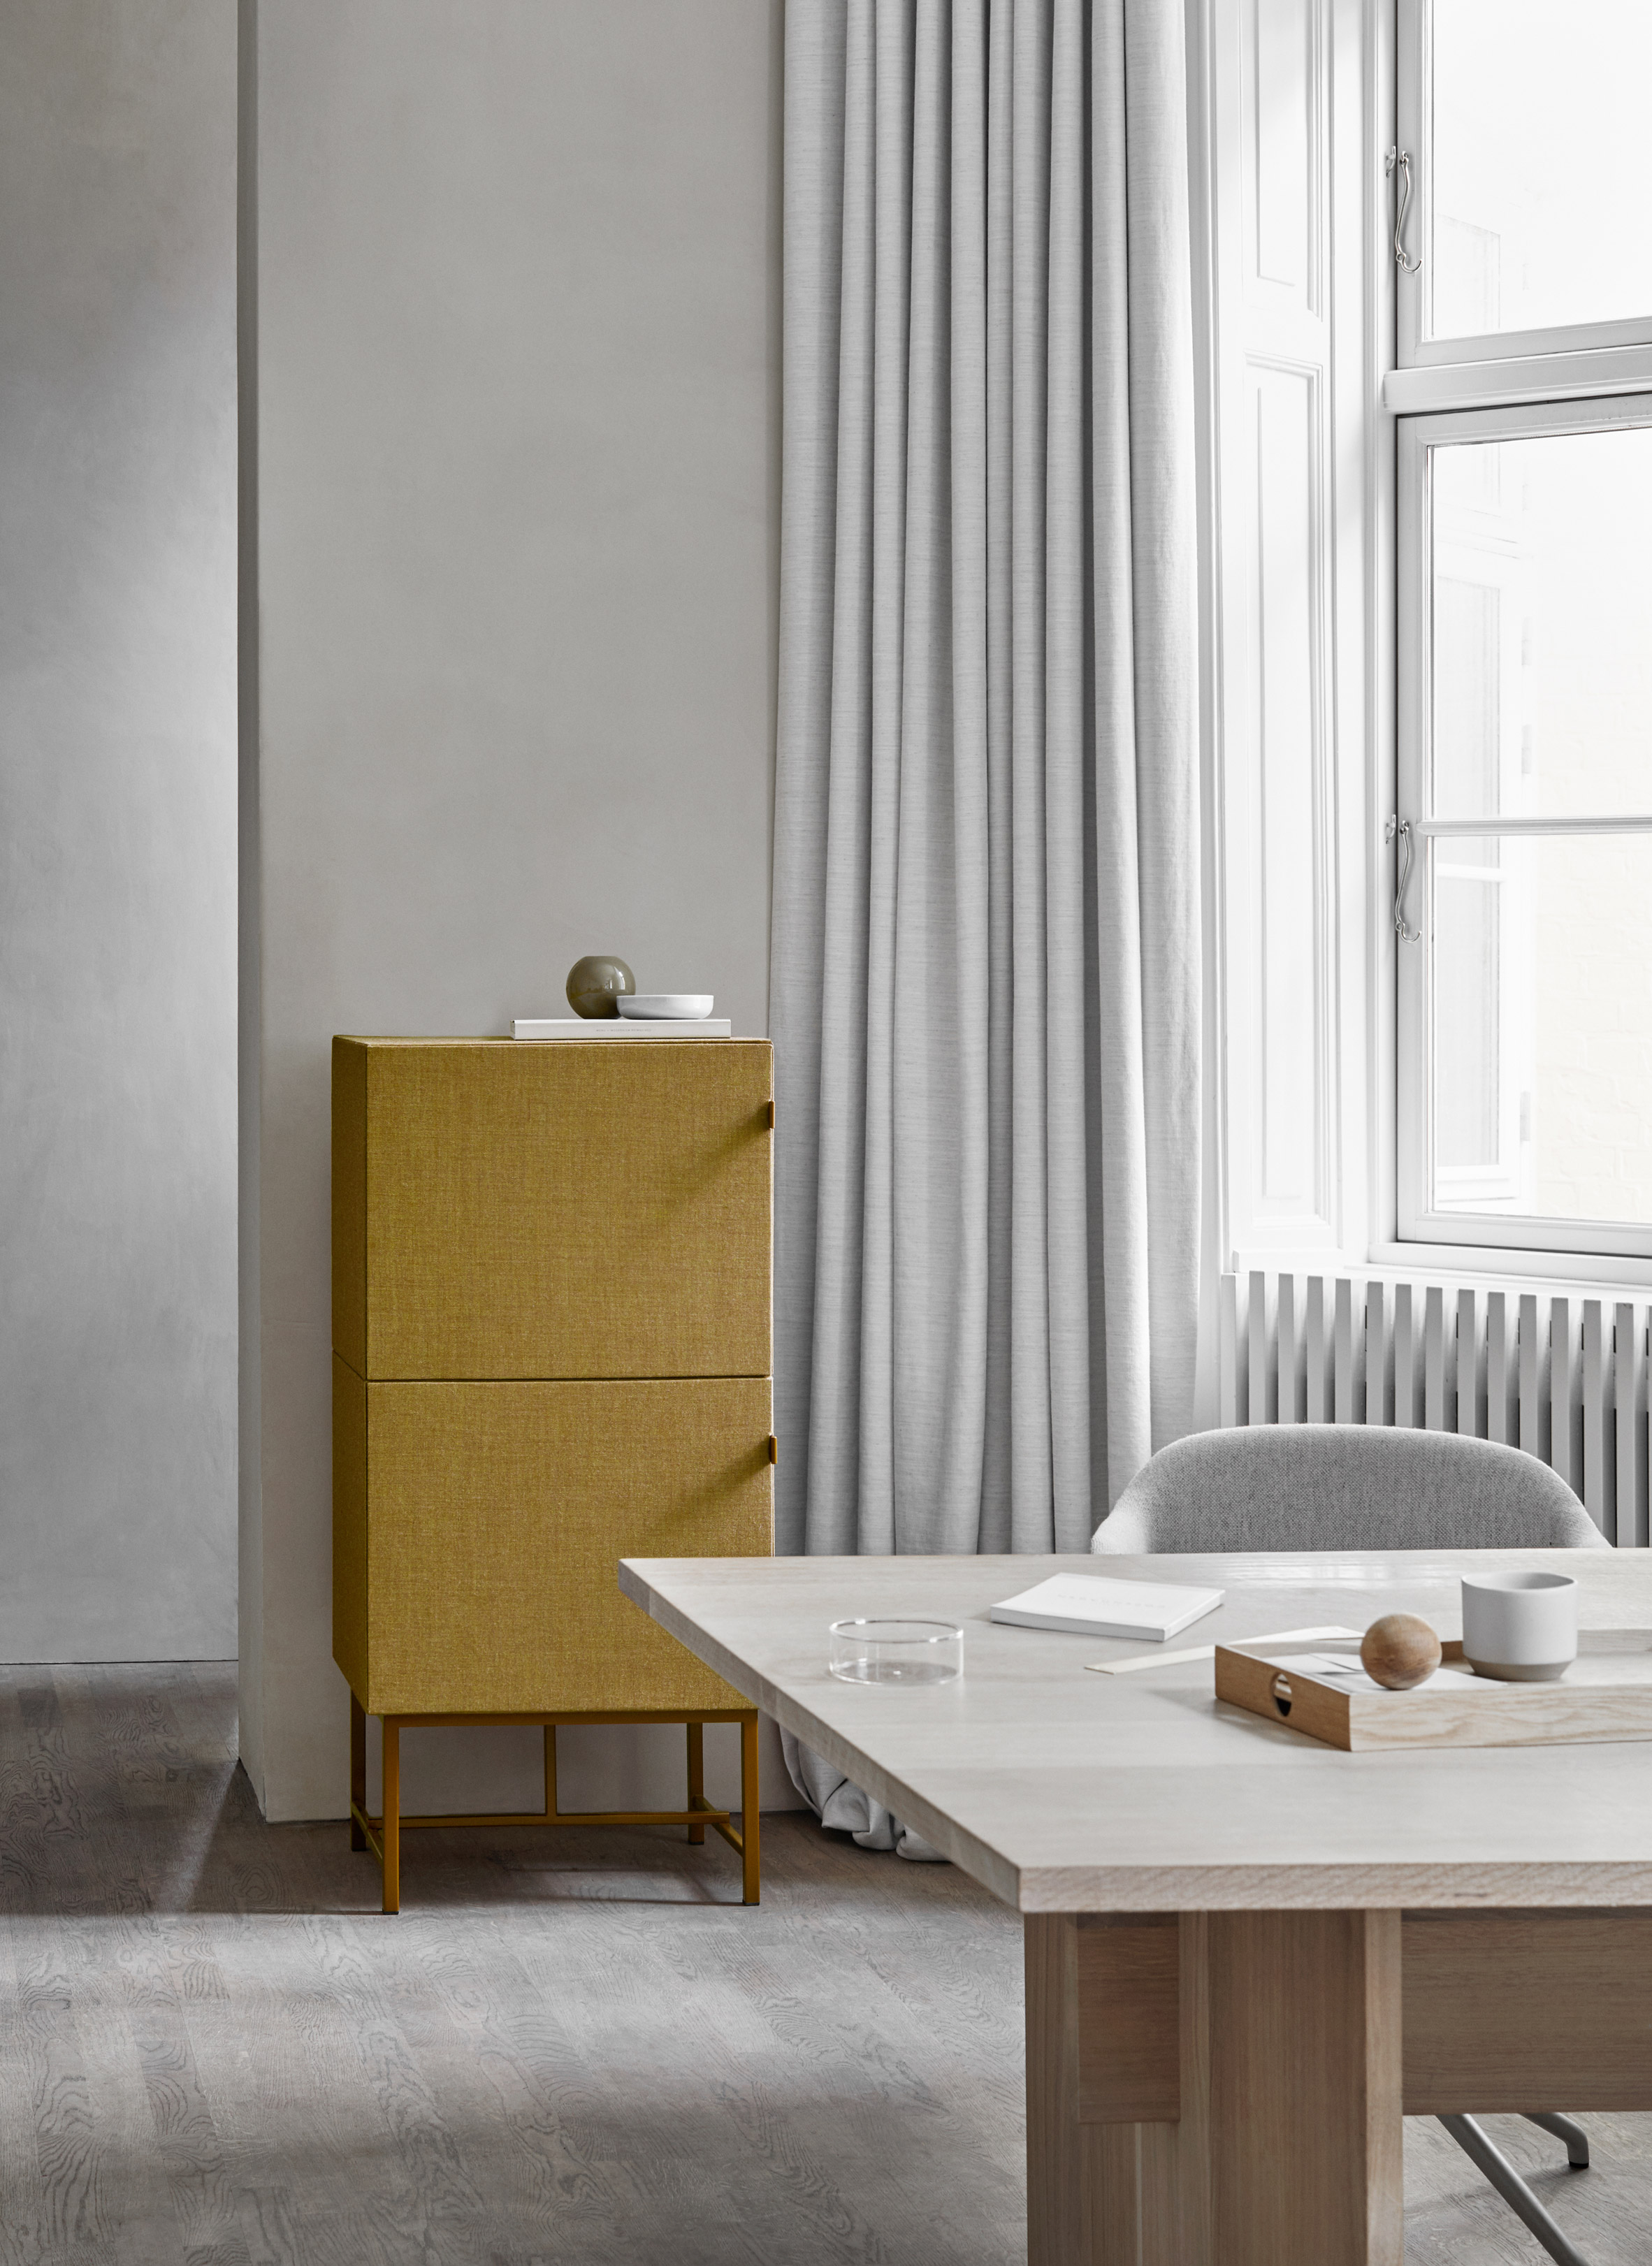 tone-cabinets-norm-architects-zilenzio-design-furniture-cabinets_dezeen_2364_col_3